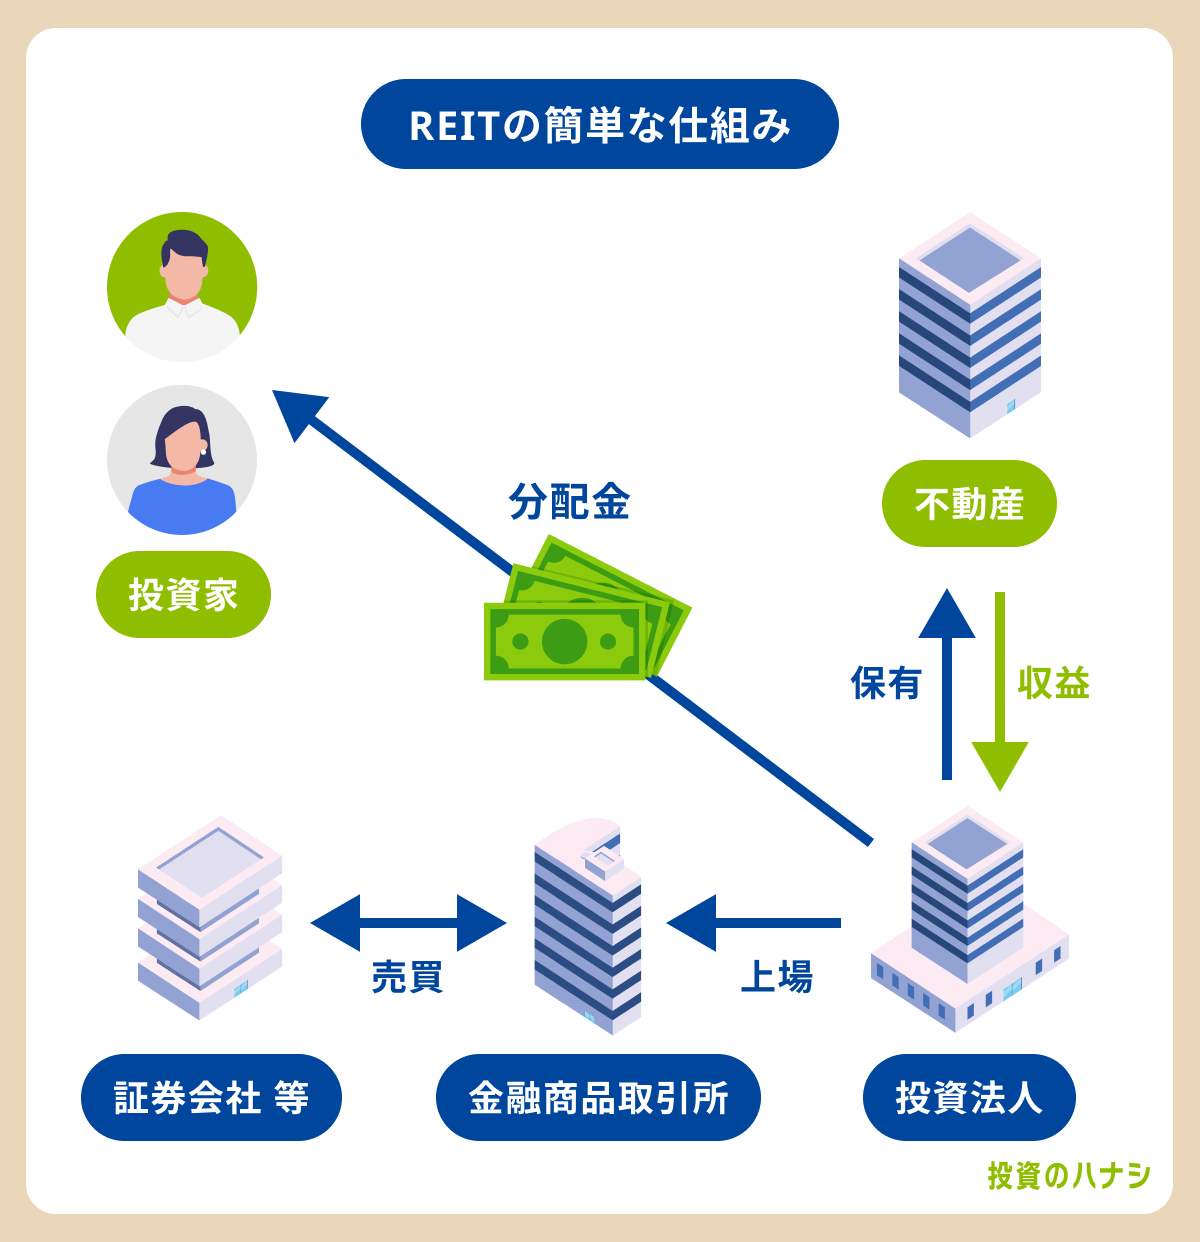 REIT（不動産投資信託）の簡単な仕組み